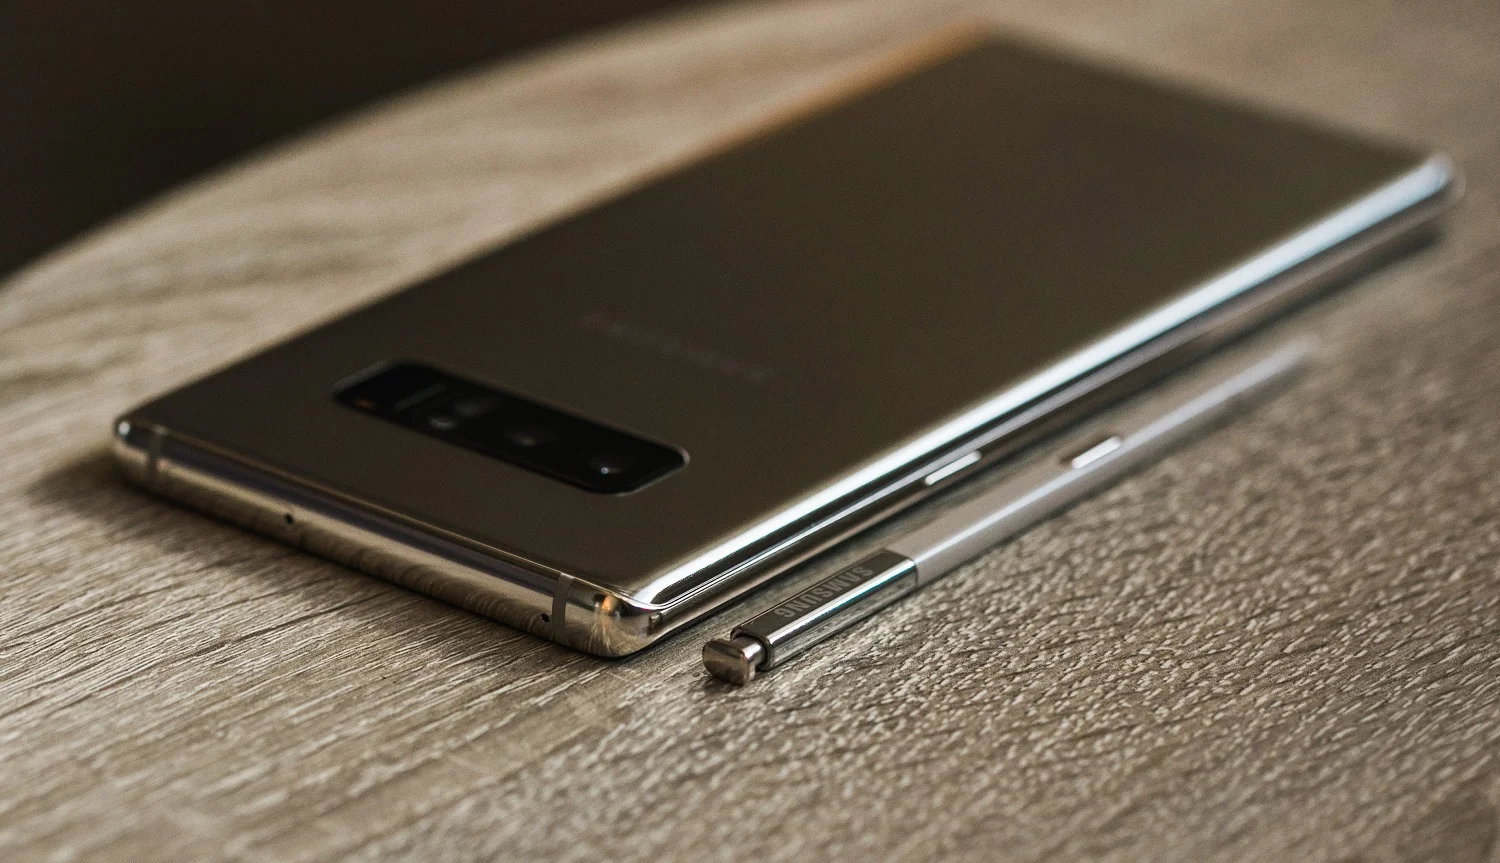 Мощно и со вкусом: раскрыты полные характеристики флагманов Samsung Galaxy Note 10 и Note 10+ - фото 1